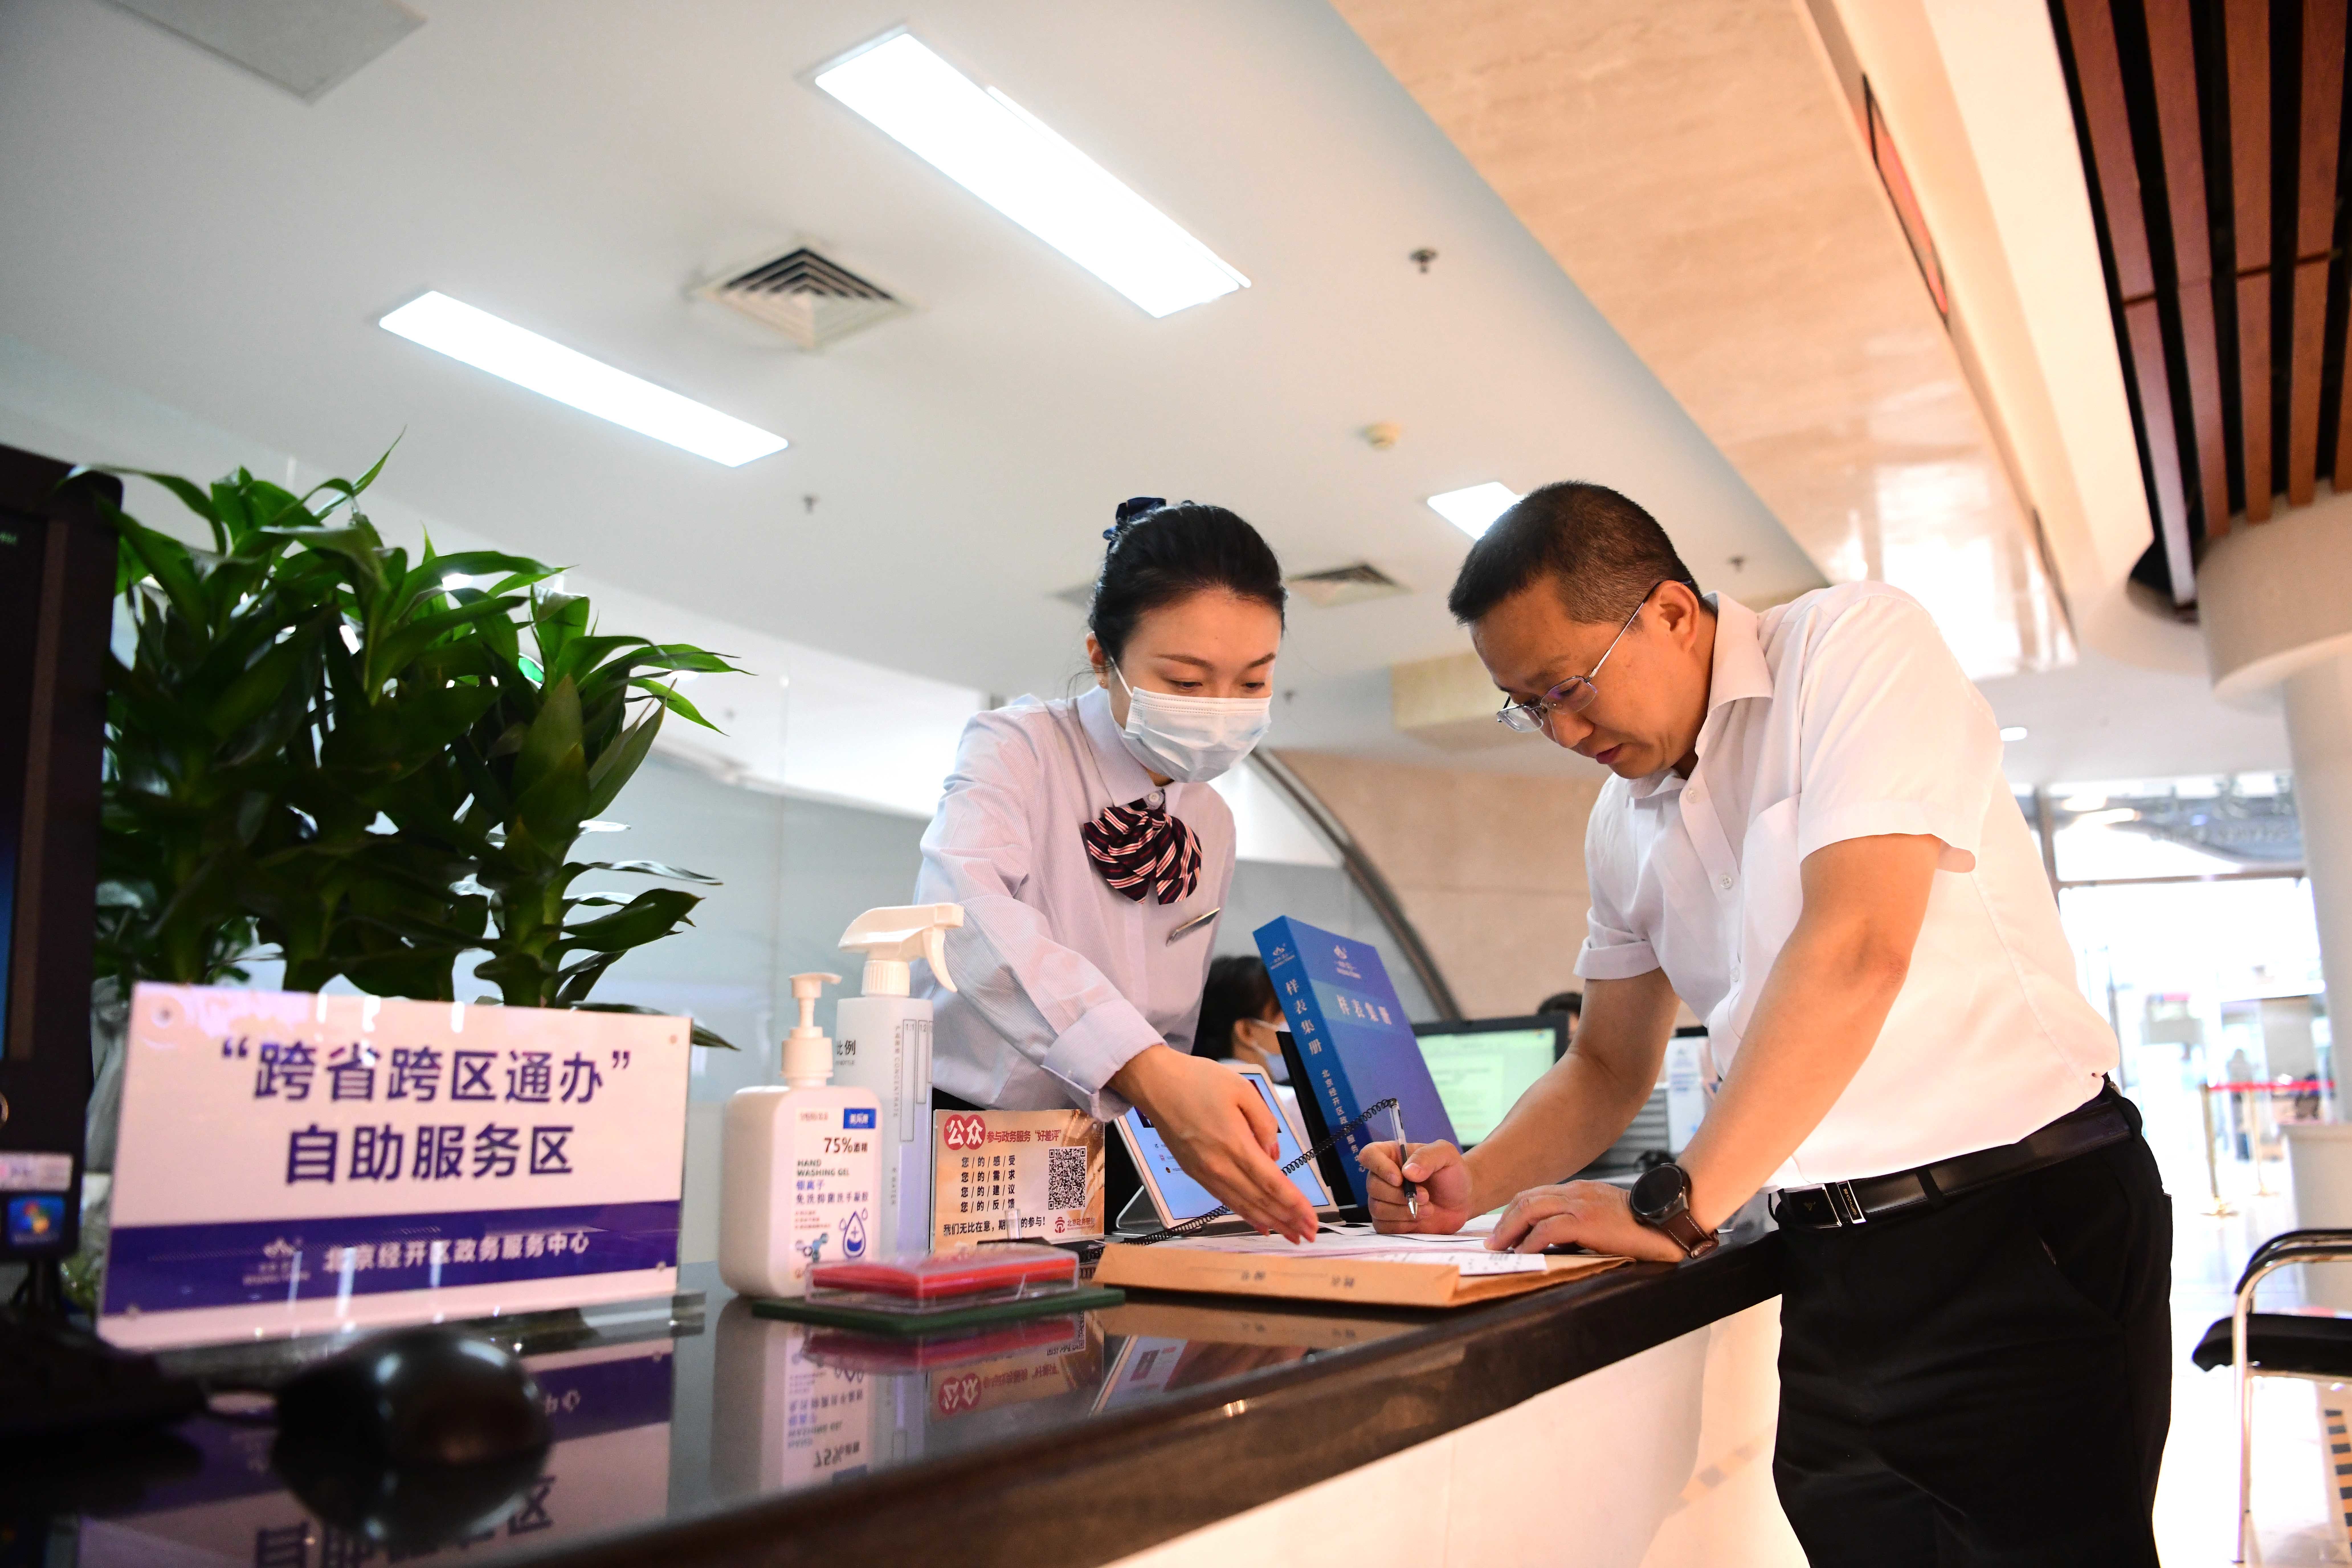 北京经开区政务服务中心“跨省通办”窗口，工作人员正在帮助企业办理跨省业务。 和冠欣摄